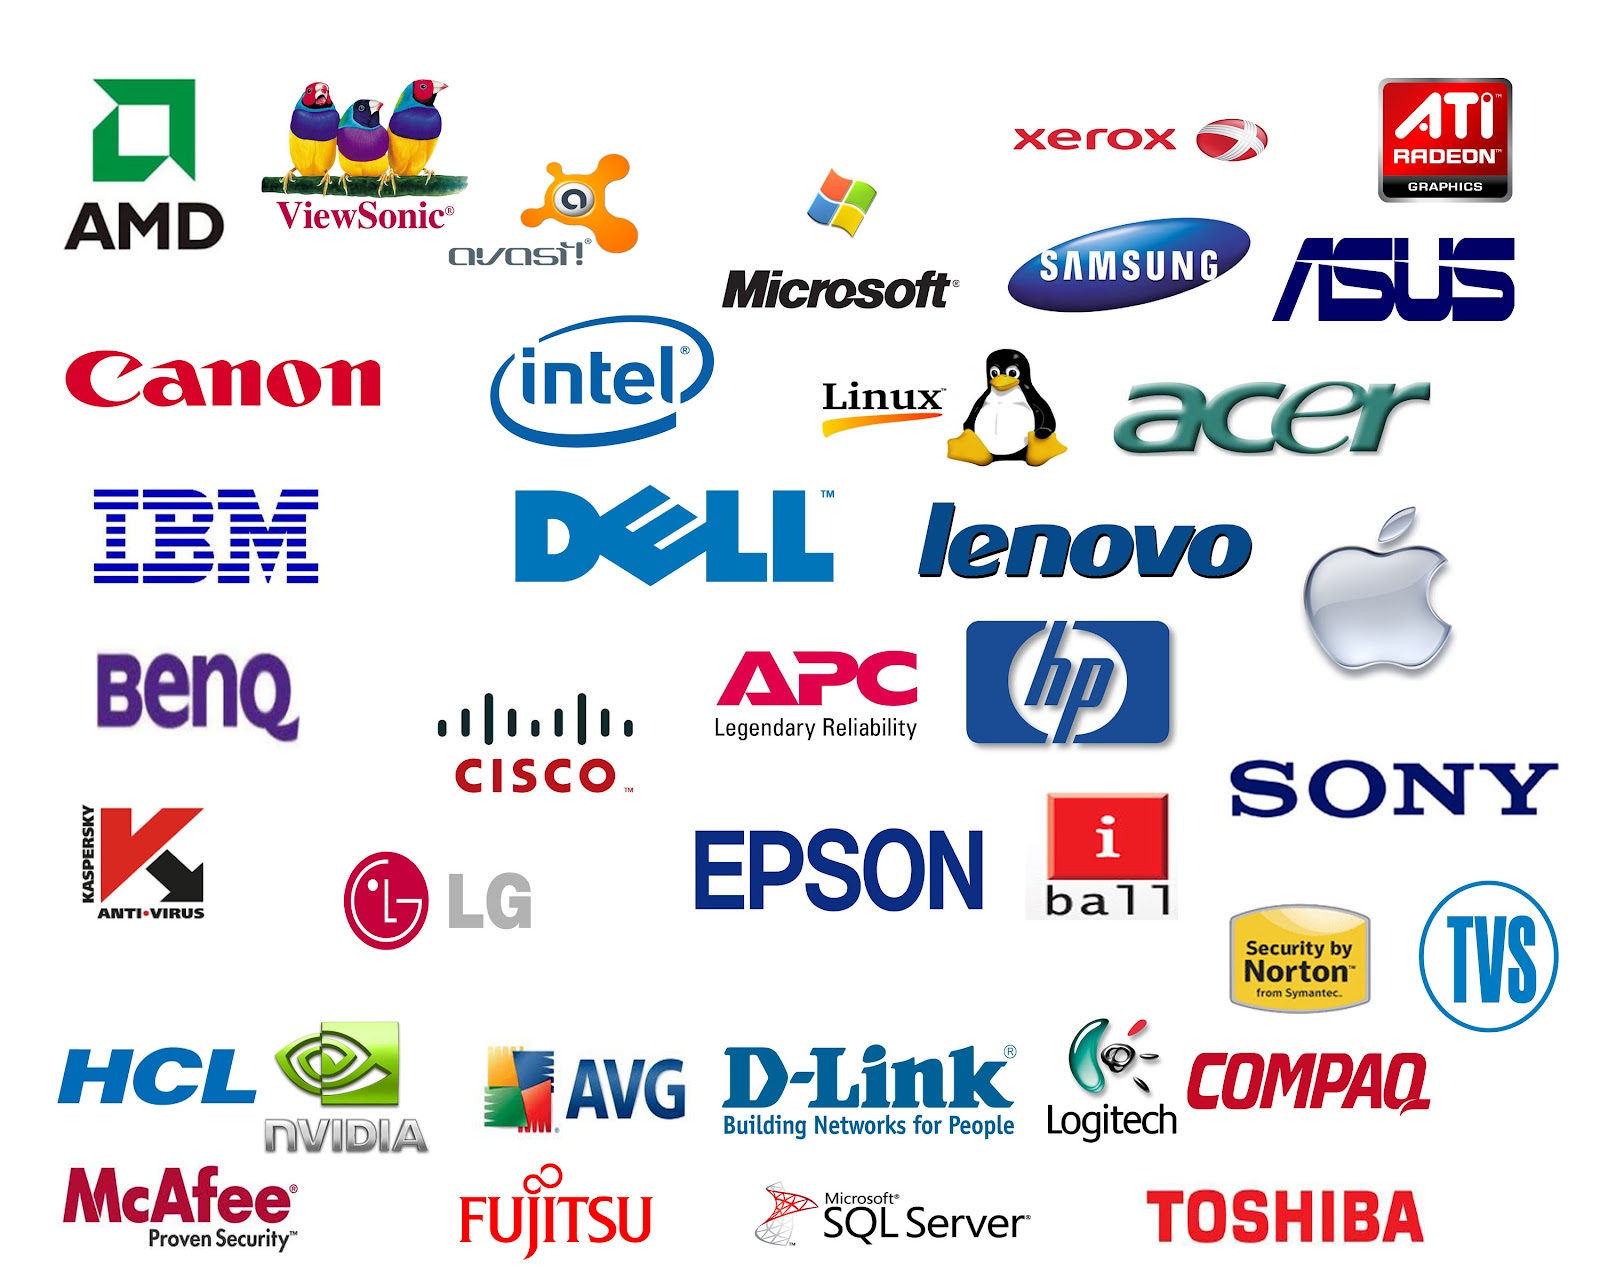 Компьютер страна производитель. Компьютерные бренды. Фирмы производители компьютеров. Логотипы известных брендов. Марки компьютеров.